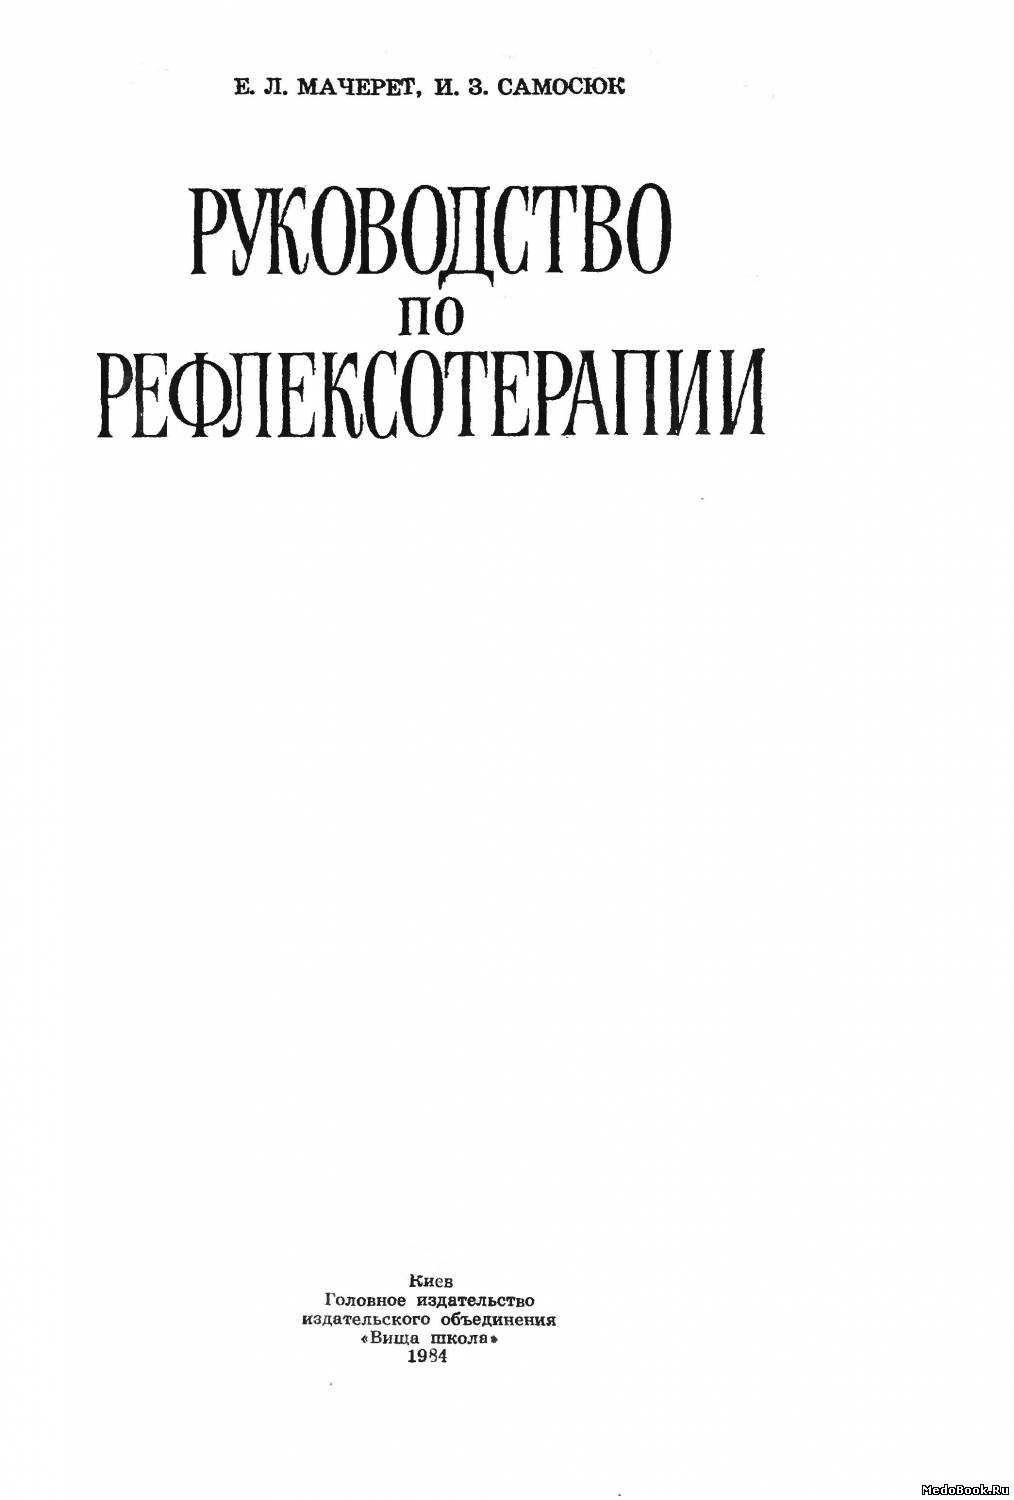 Скачать бесплатно книгу, учебник по медицине Руководство по рефлексотерапии, Мачерет Е.Л., Самосюк И.З. 1984 г.